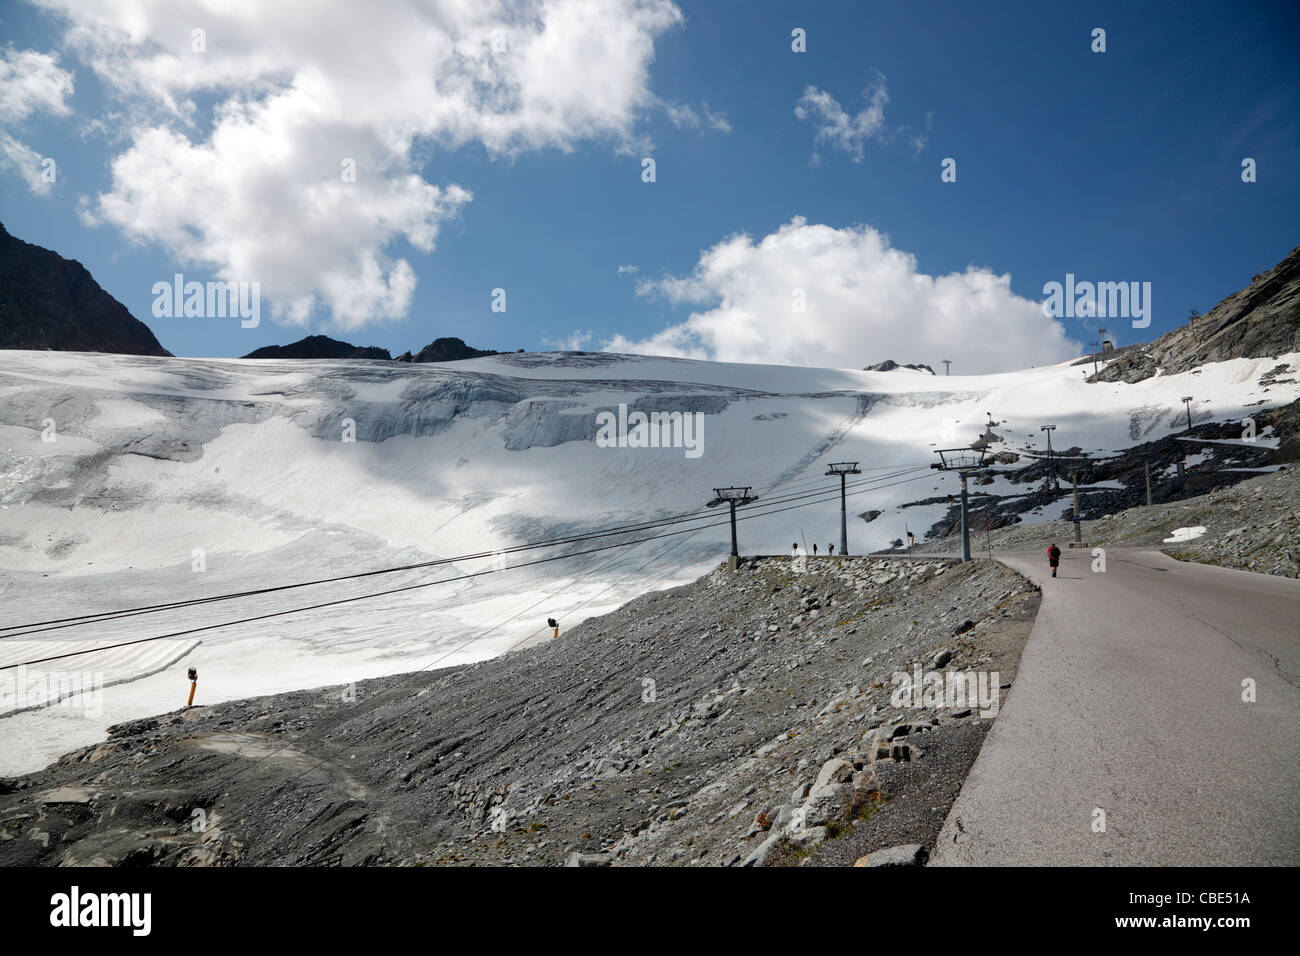 Il ghiacciaio Rettenbach a Sölden, Tirolo, Austria, su una soleggiata giornata estiva nel mese di luglio con le nuvole. Ski lift e strada. Foto Stock